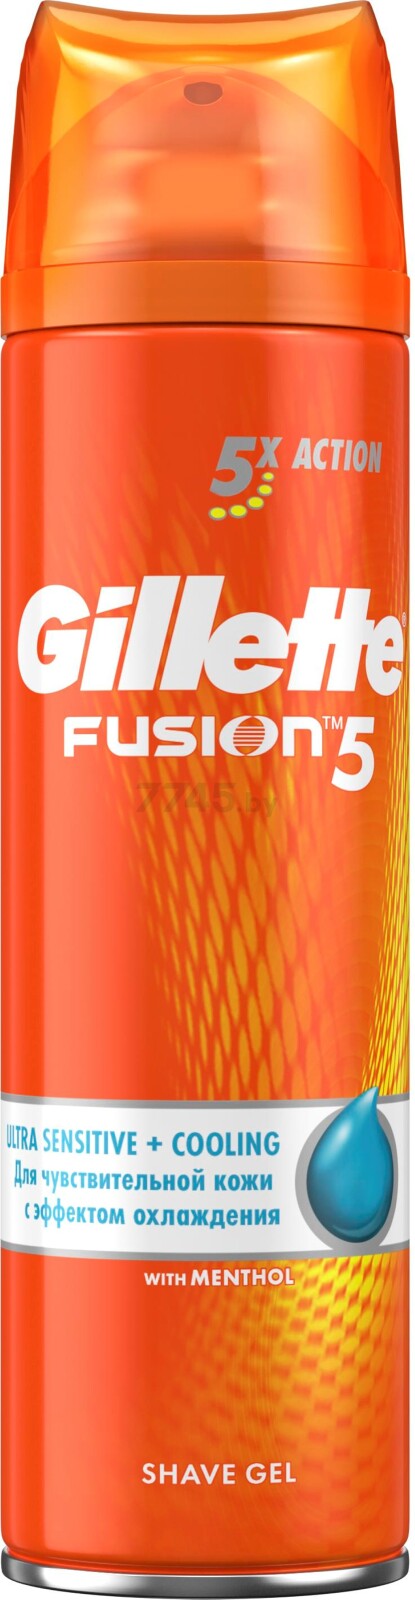 Гель для бритья GILLETTE Fusion5 Cooling для чувствительной кожи 200 мл (7702018465033)